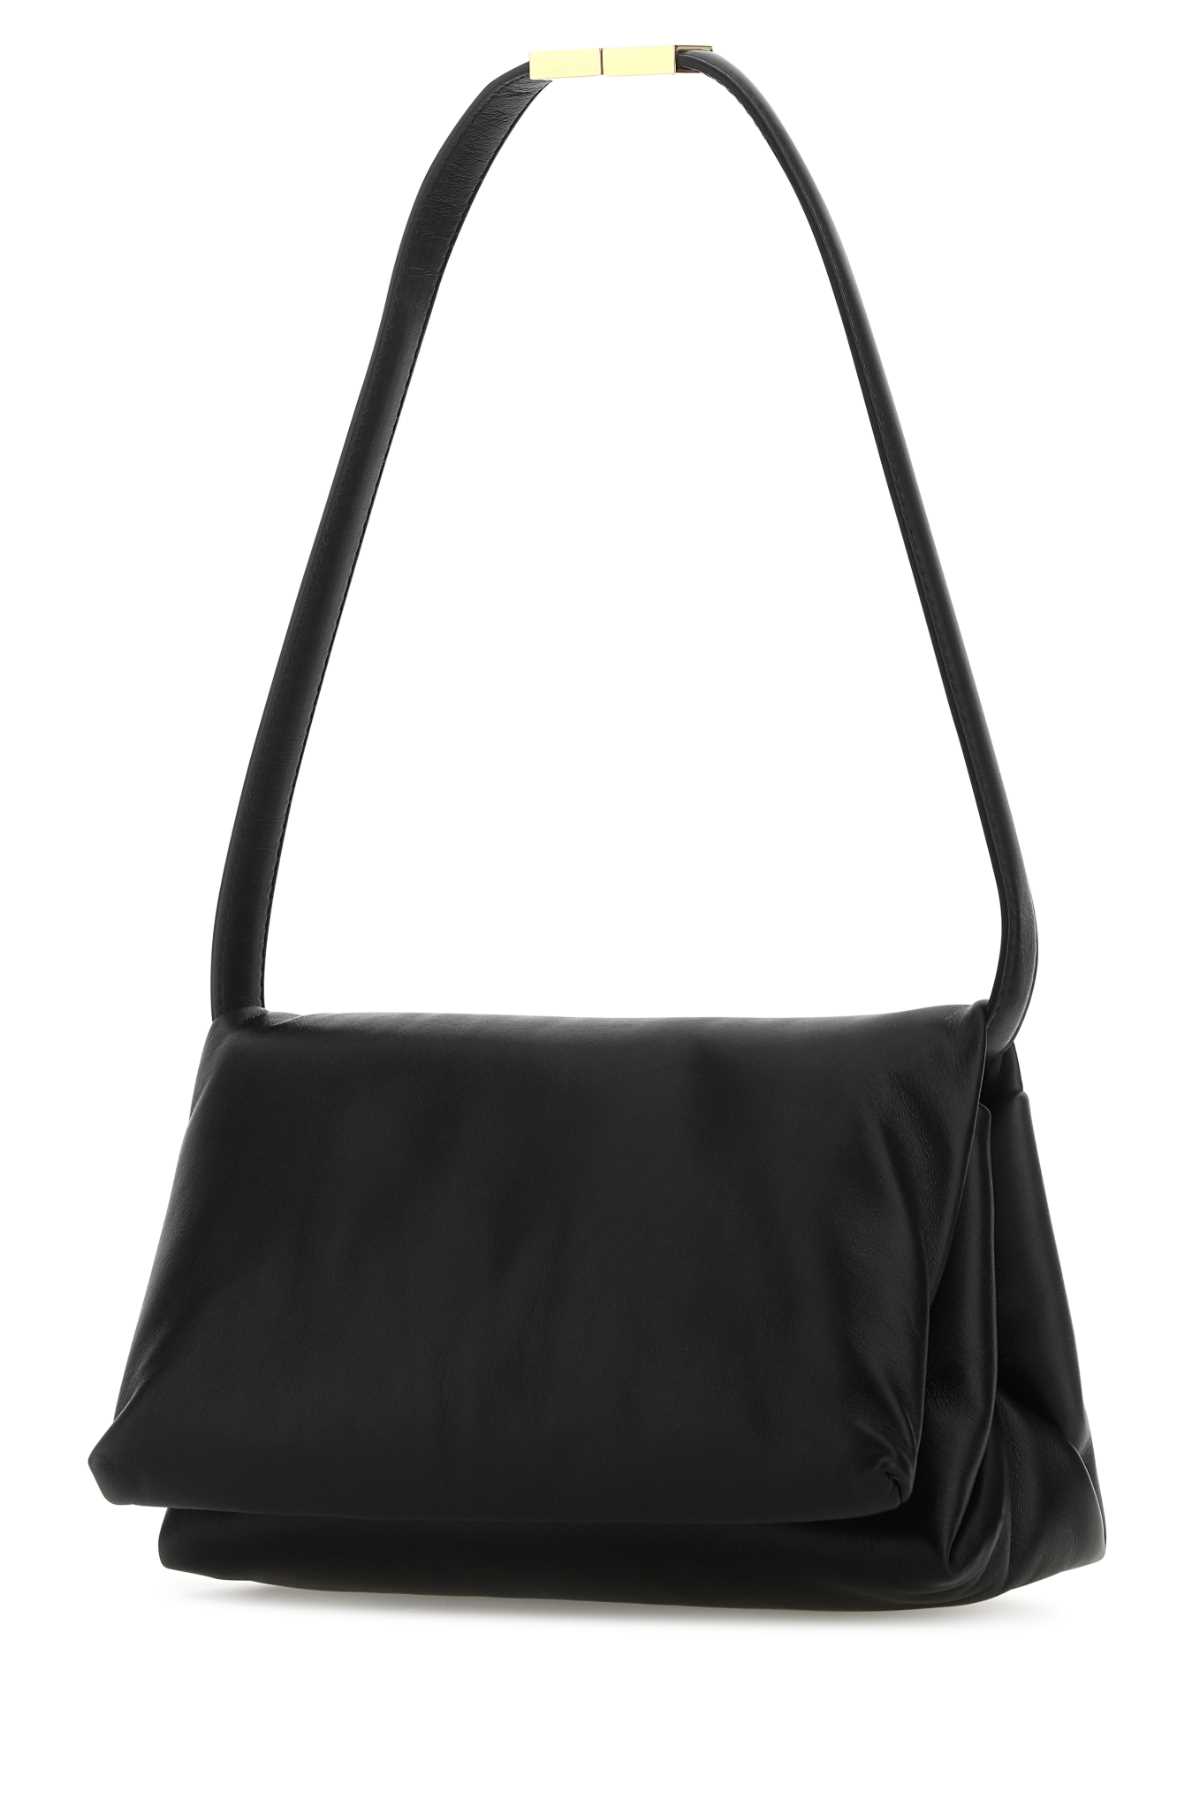 Marni Black Leather Prisma Shoulder Bag